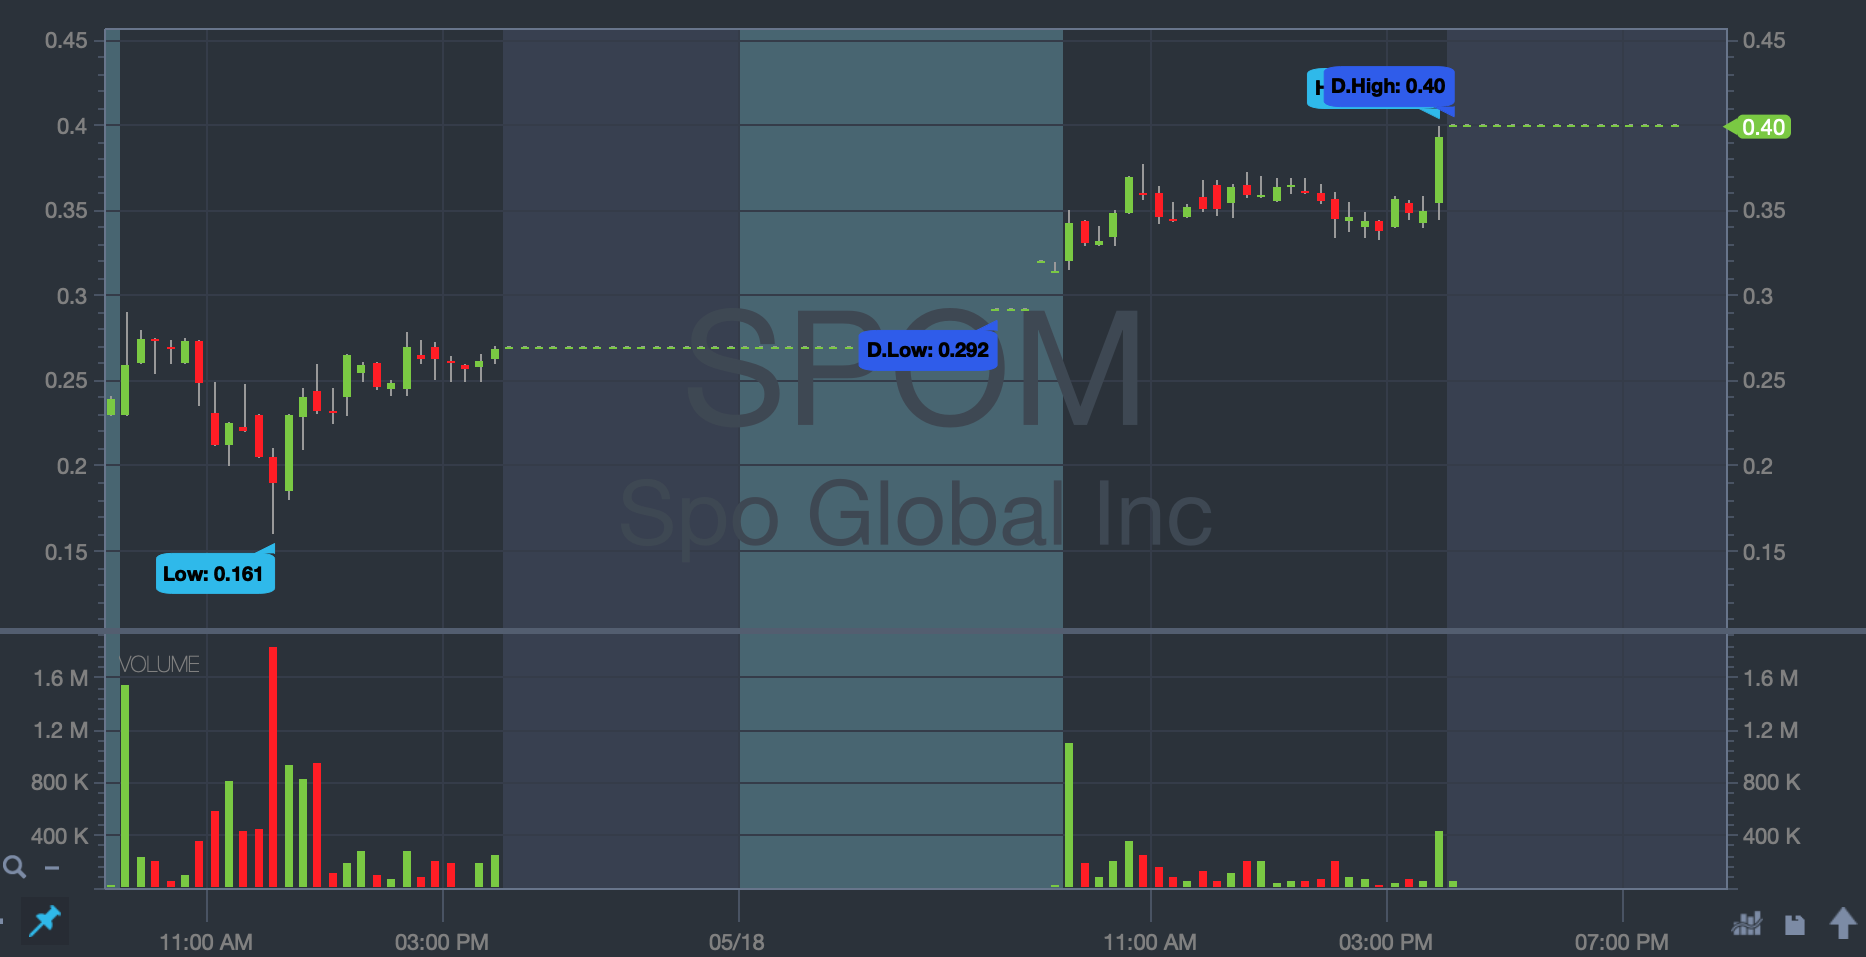 SPOM stock chart